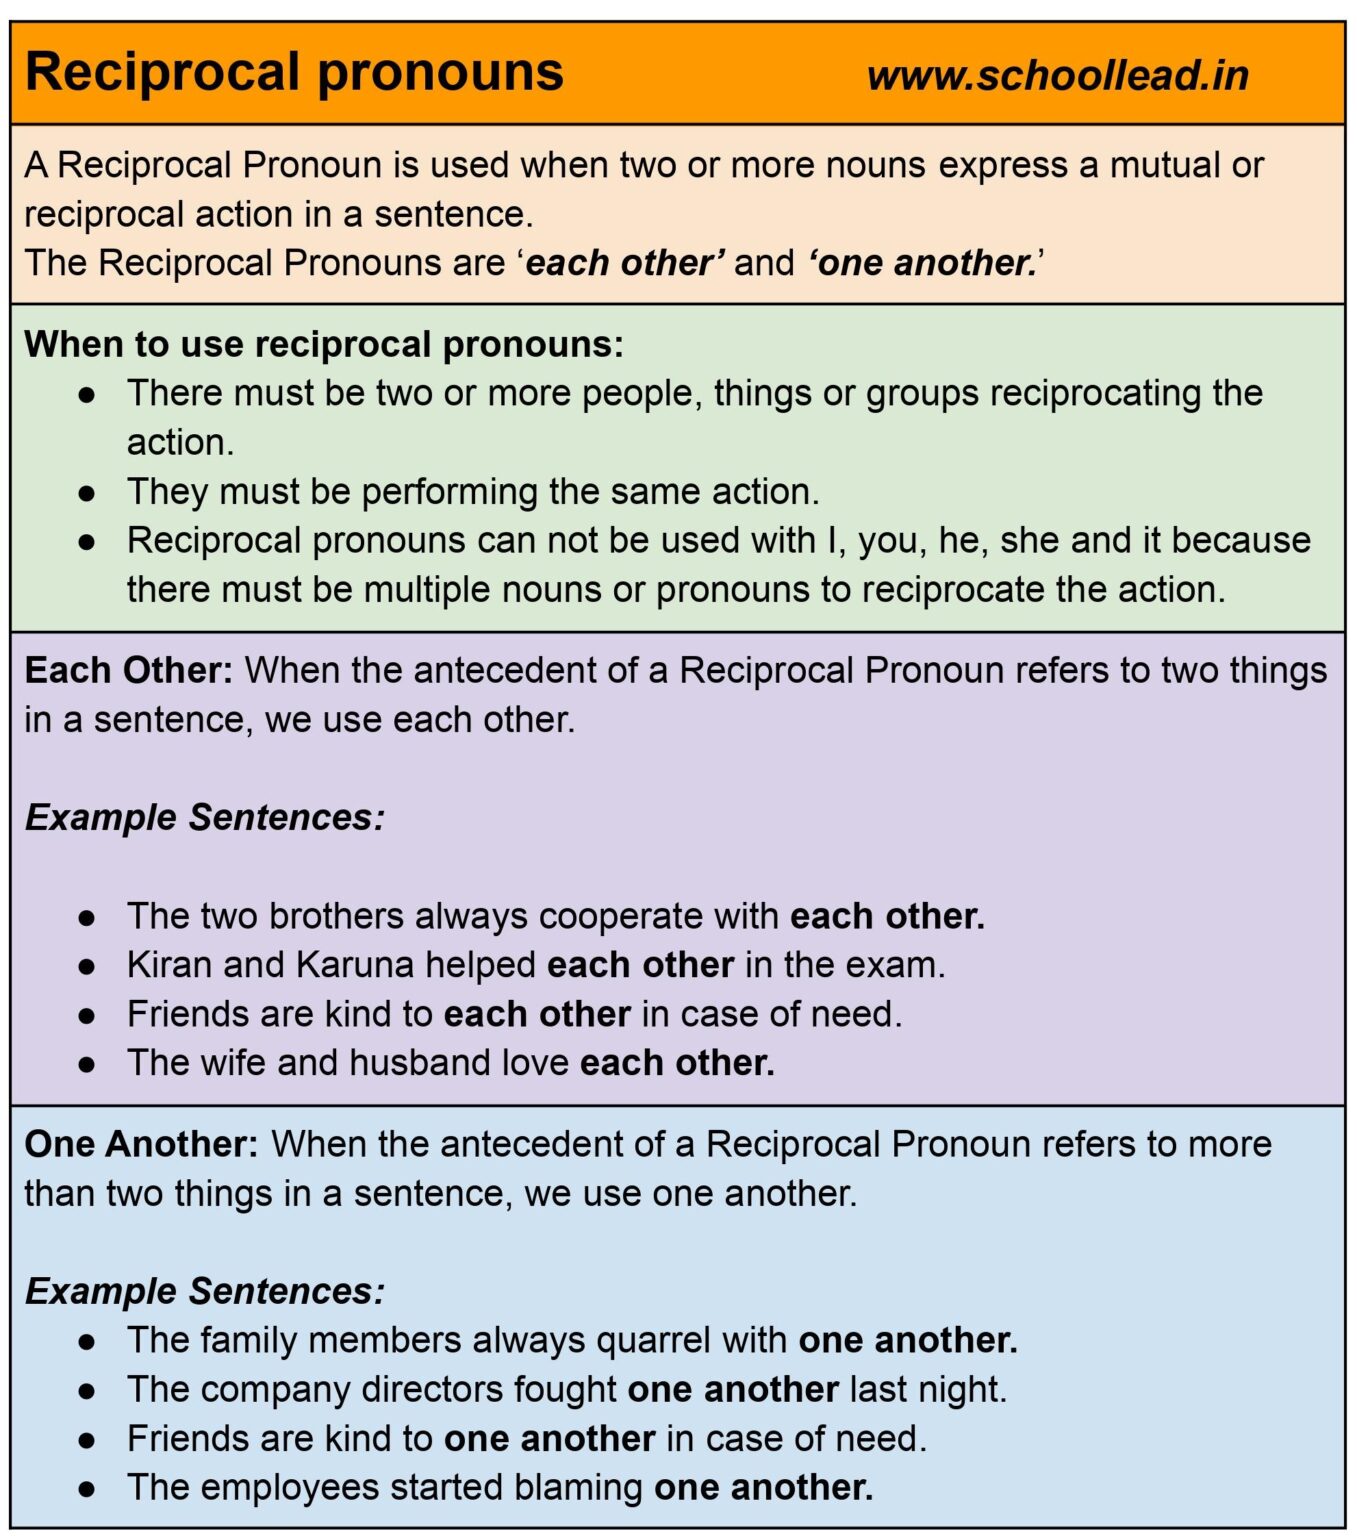 Reciprocal Pronouns The Pronoun School Lead